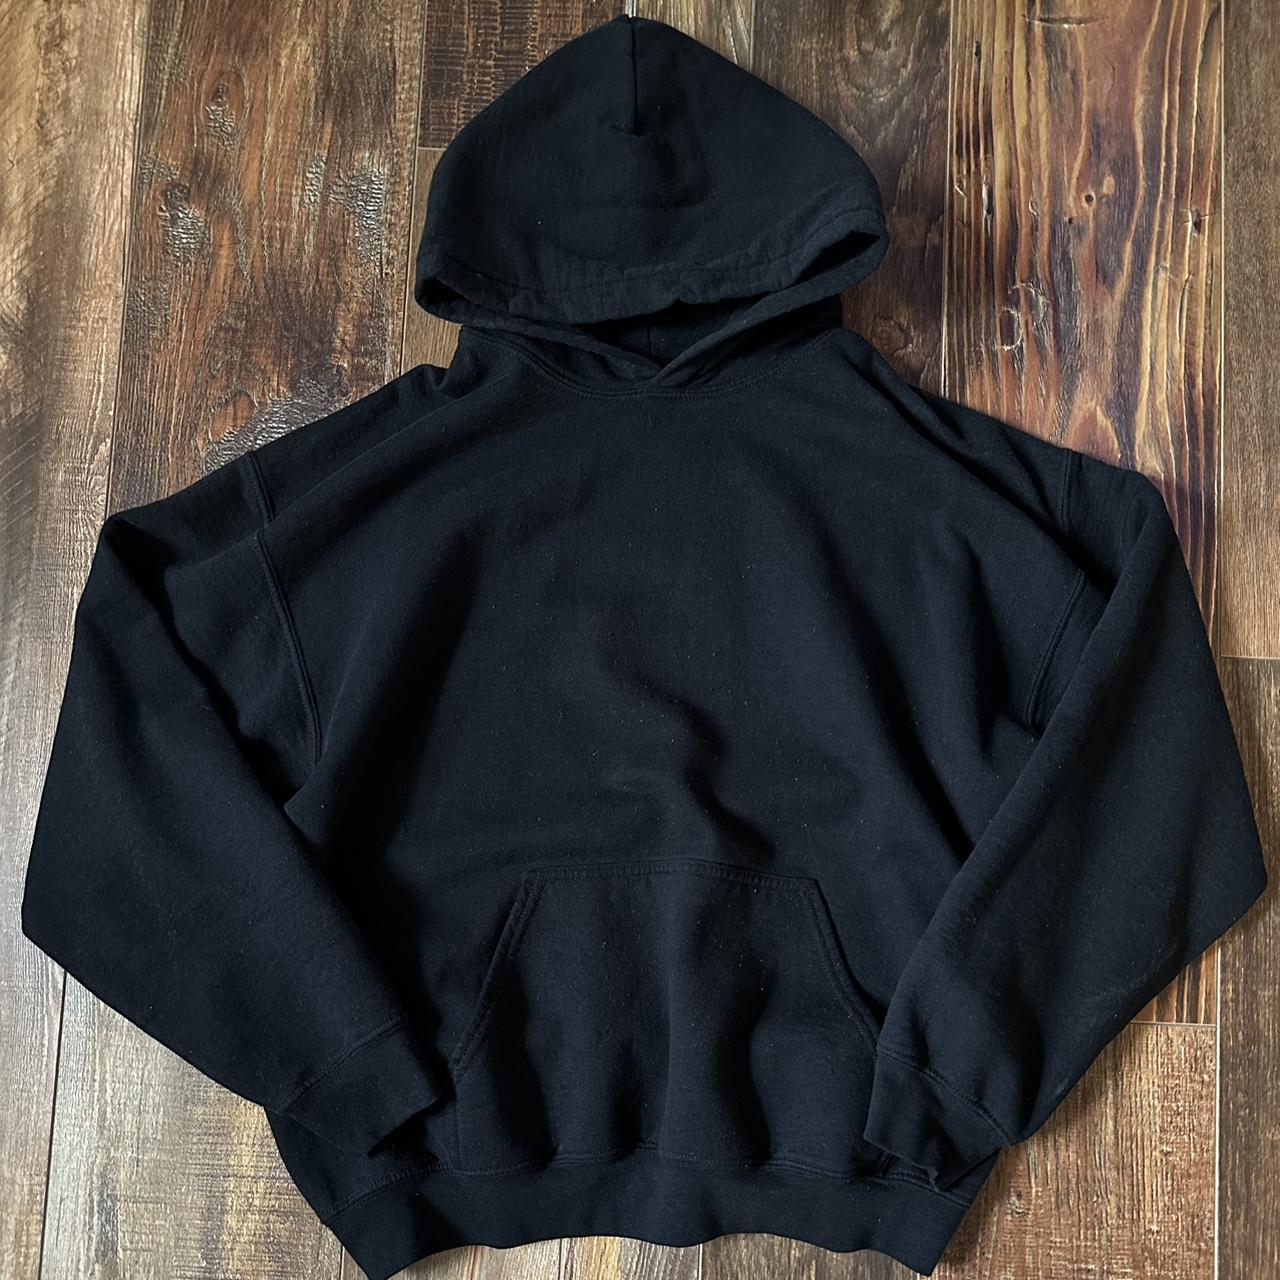 black gildan hoodie my favorite brand for pump... - Depop